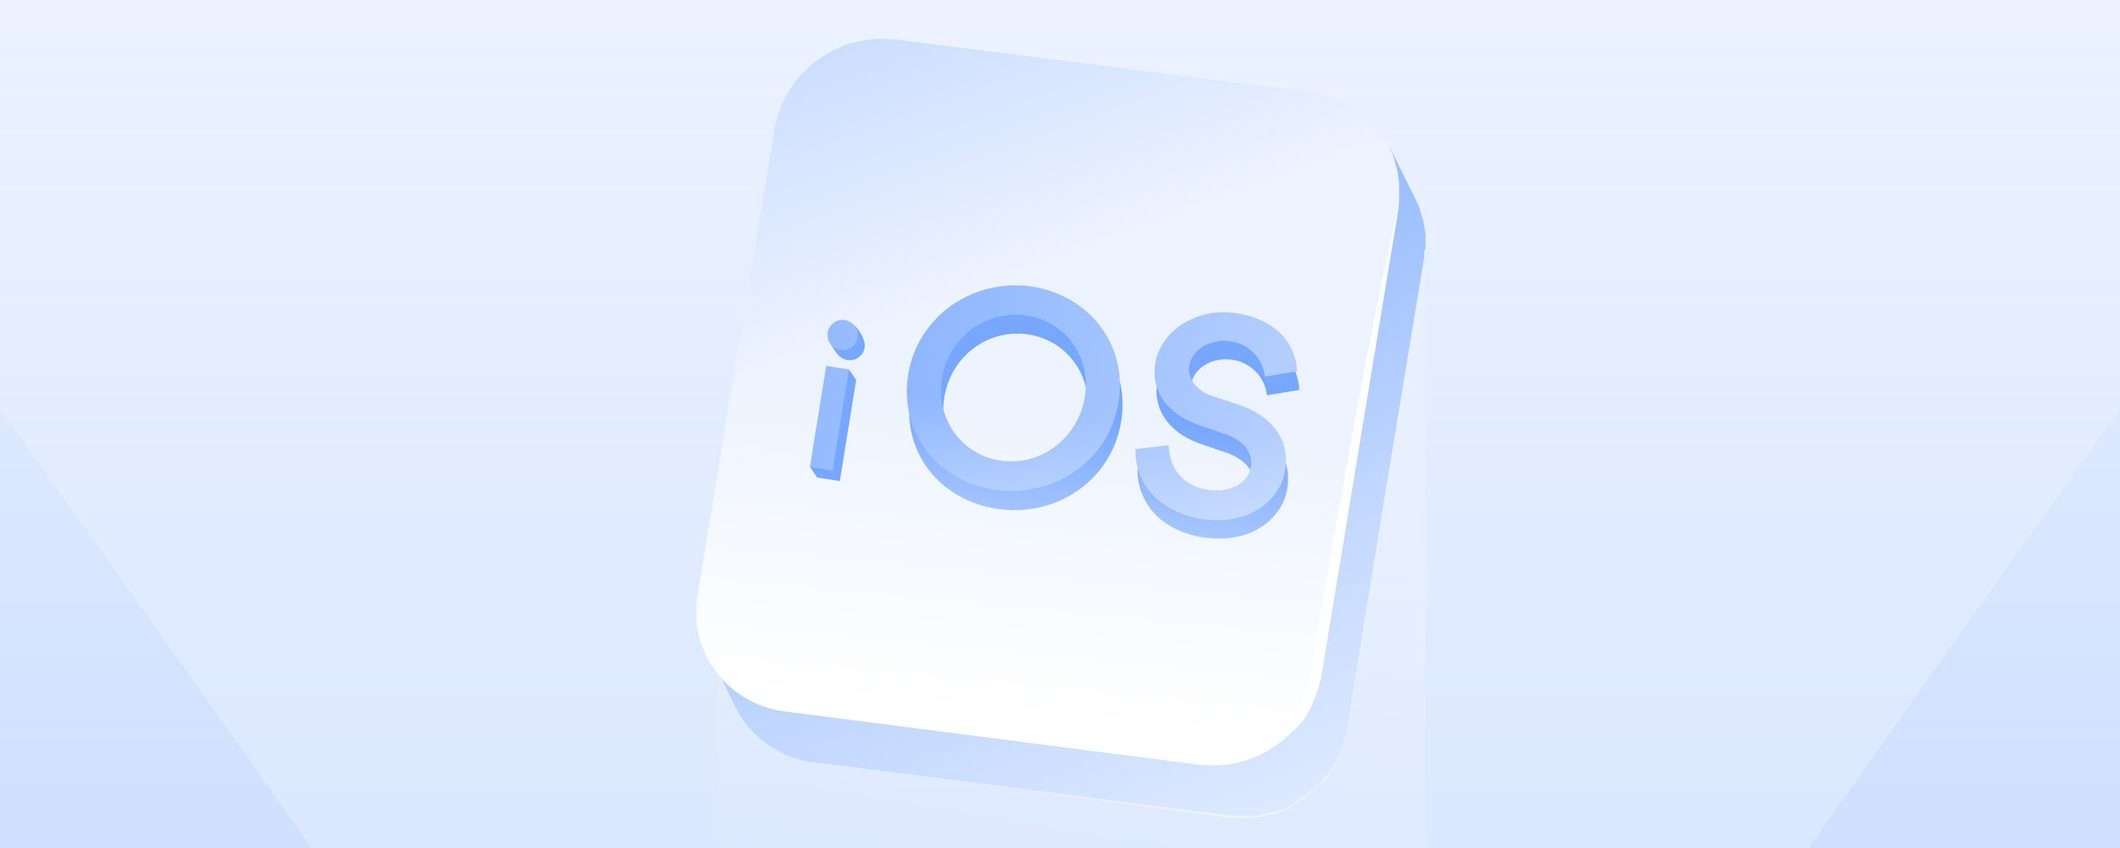 NordVPN per iOS: le novità della versione 7.21.0